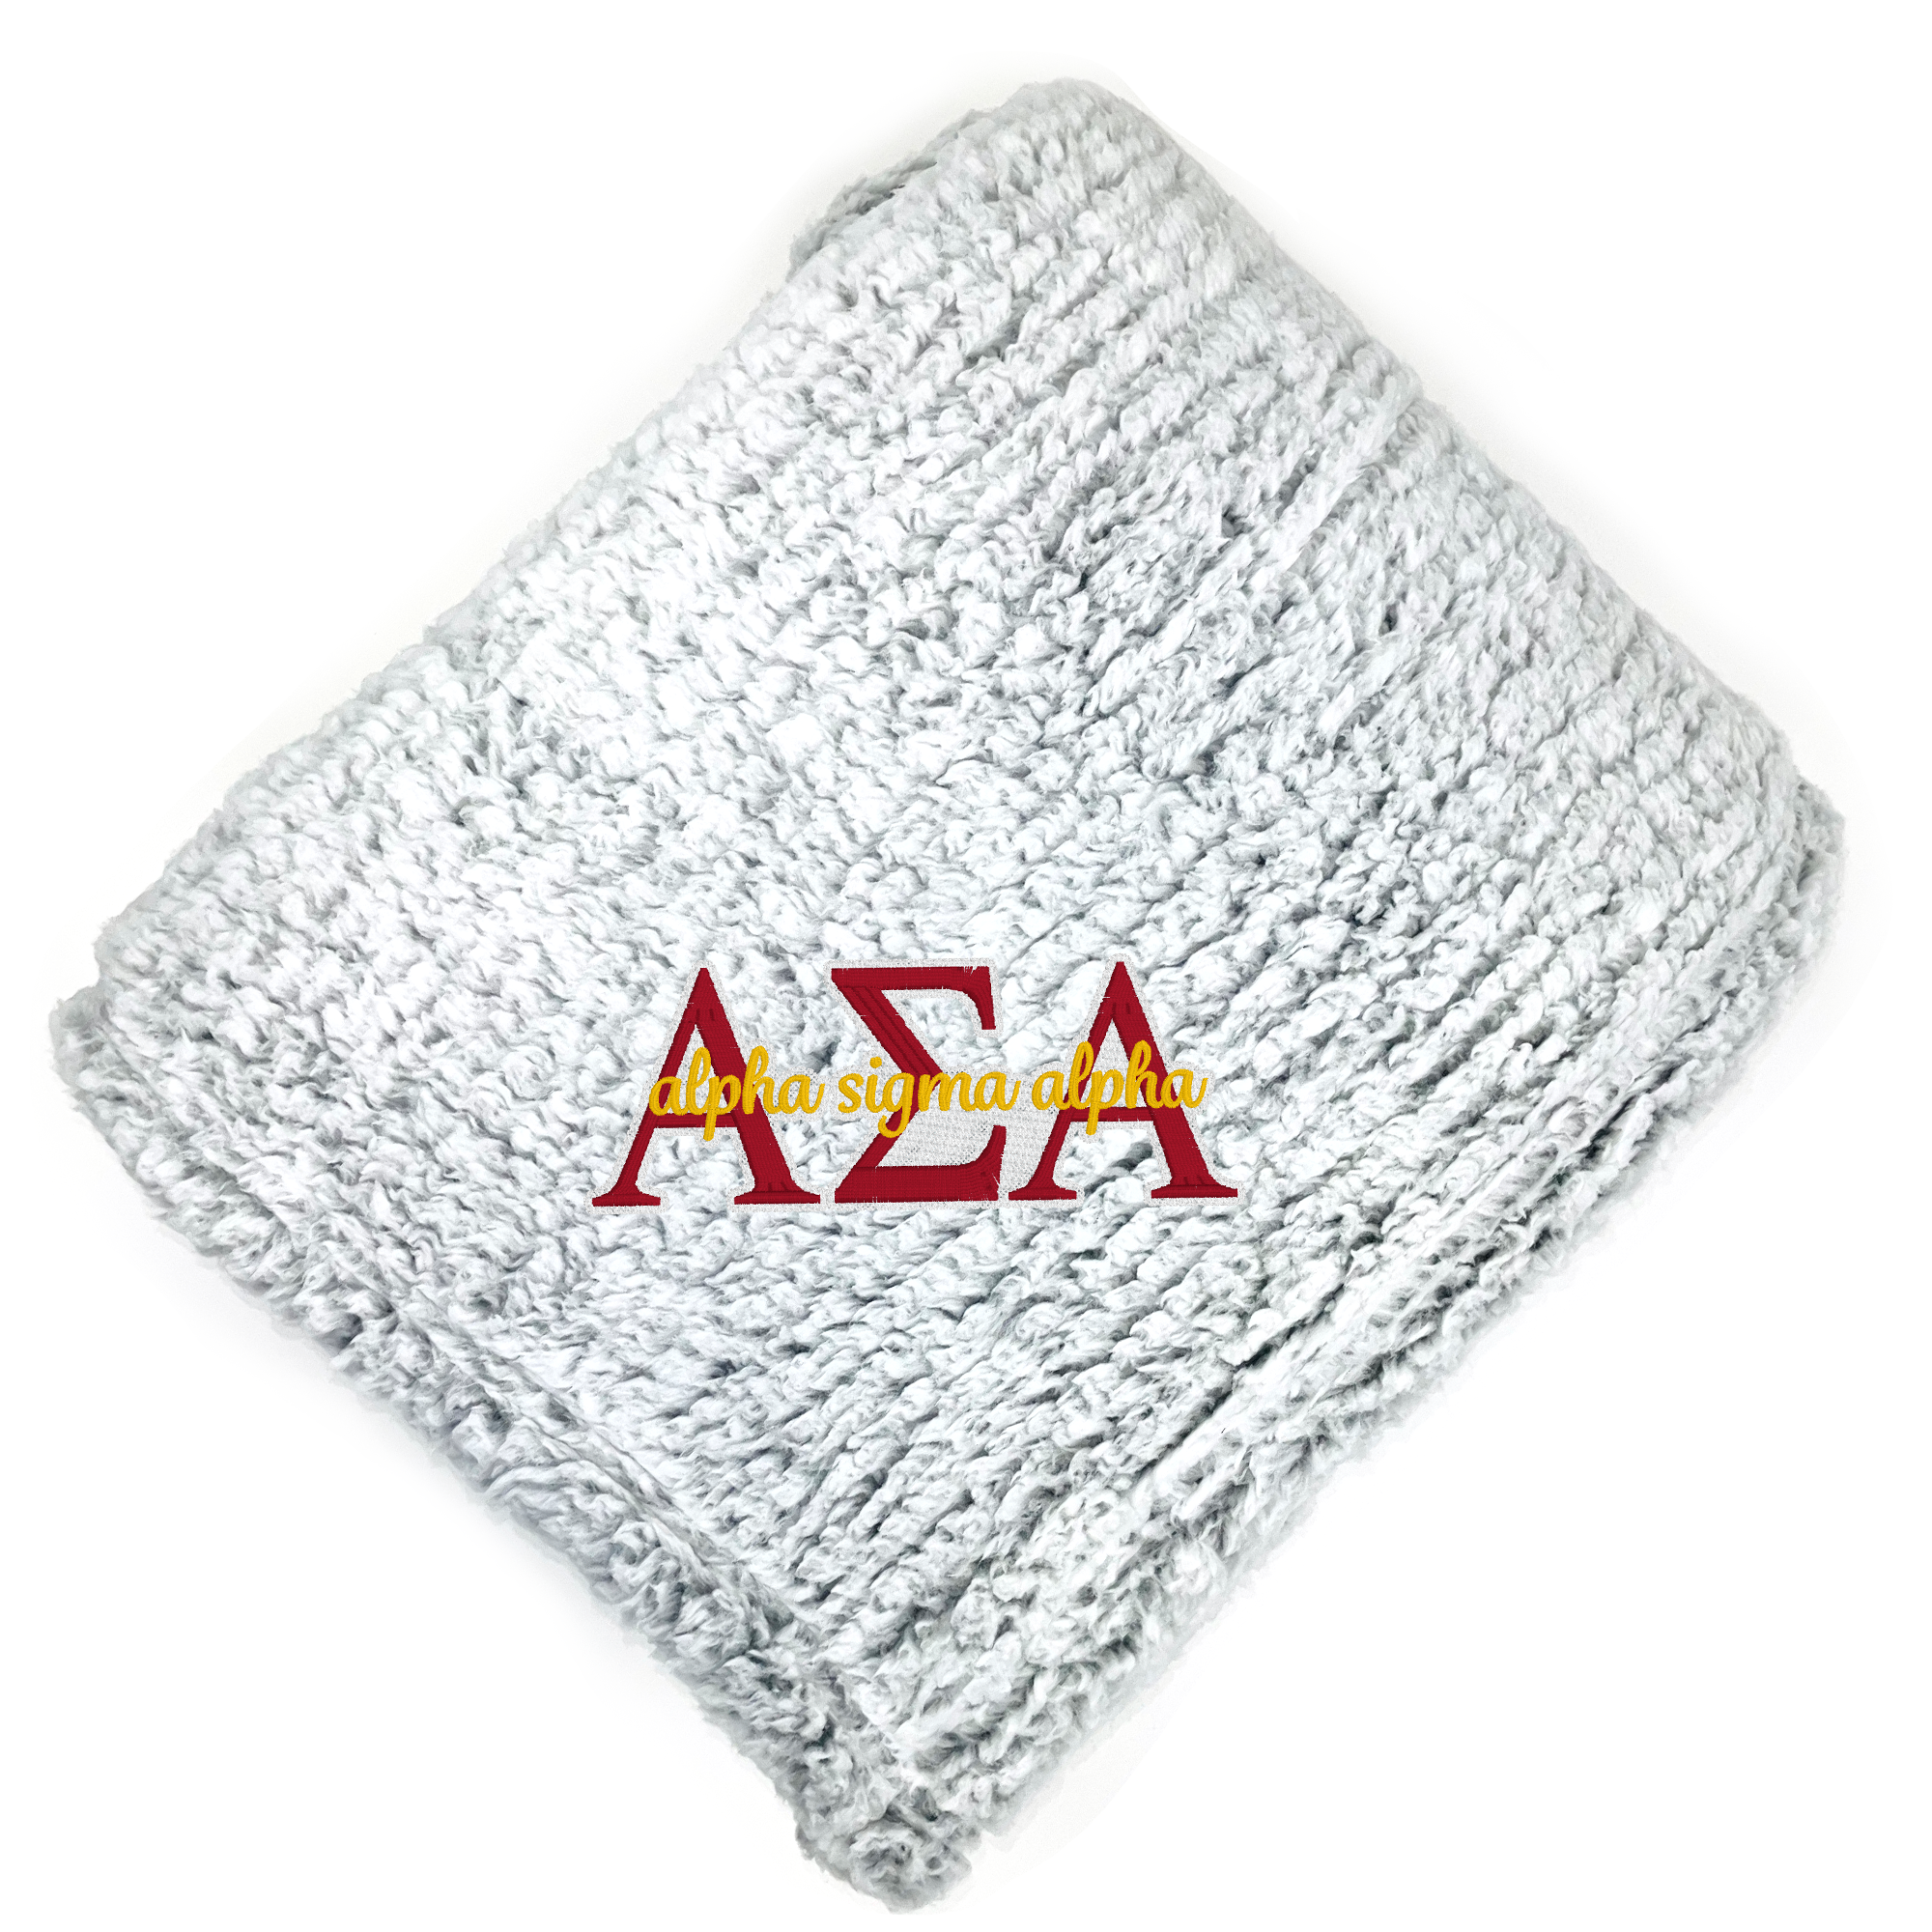 Alpha Sigma Alpha Fuzzy Sherpa Blanket - Go Greek Chic